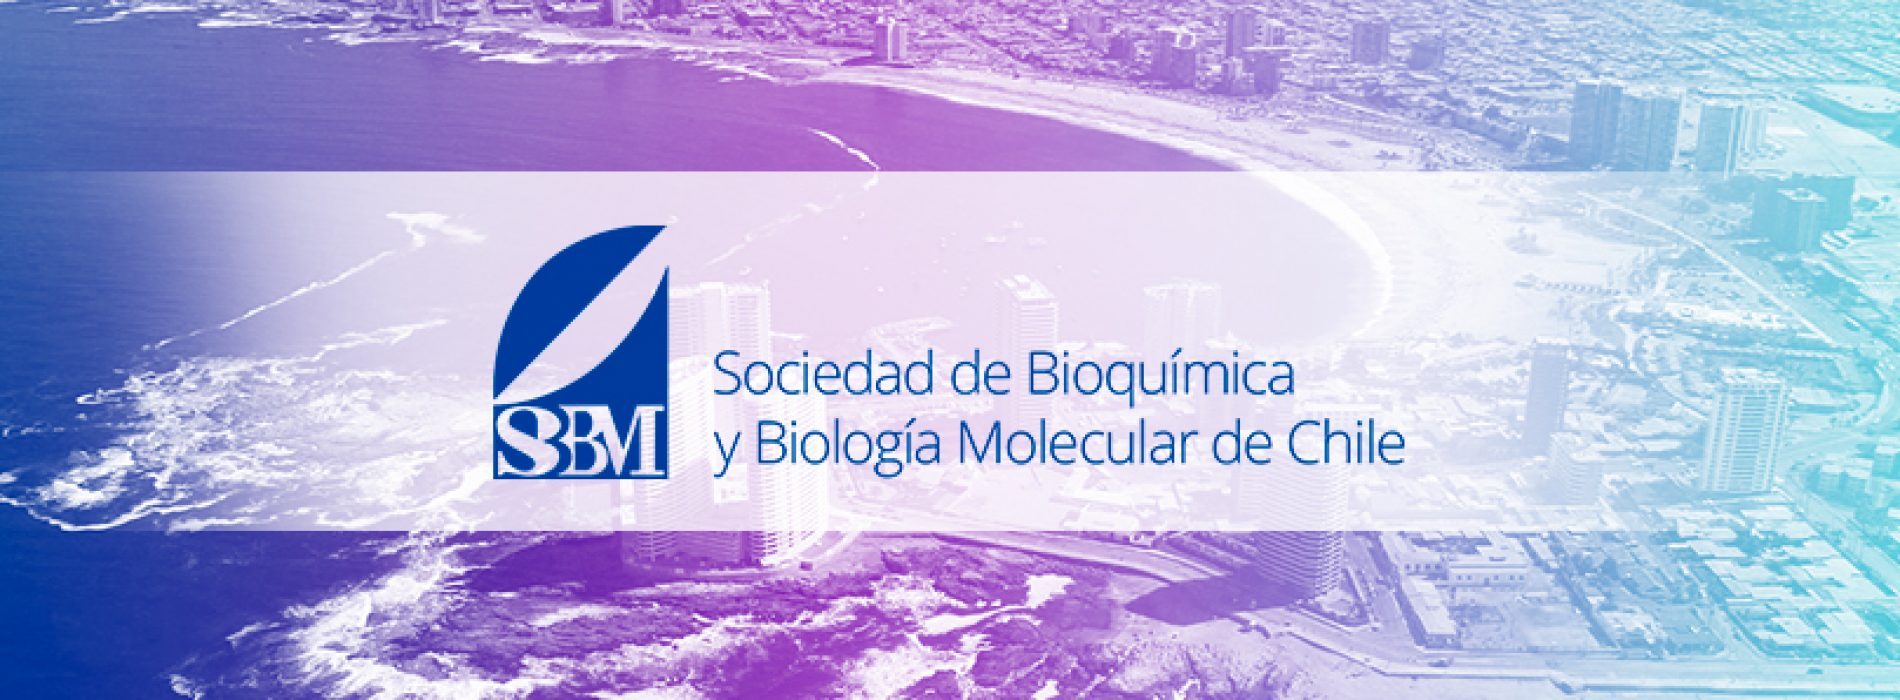 El 15 de julio cierre impostergable de recepción de resúmenes para Congreso de Sociedad de Bioquímica y Biología Molecular de Chile